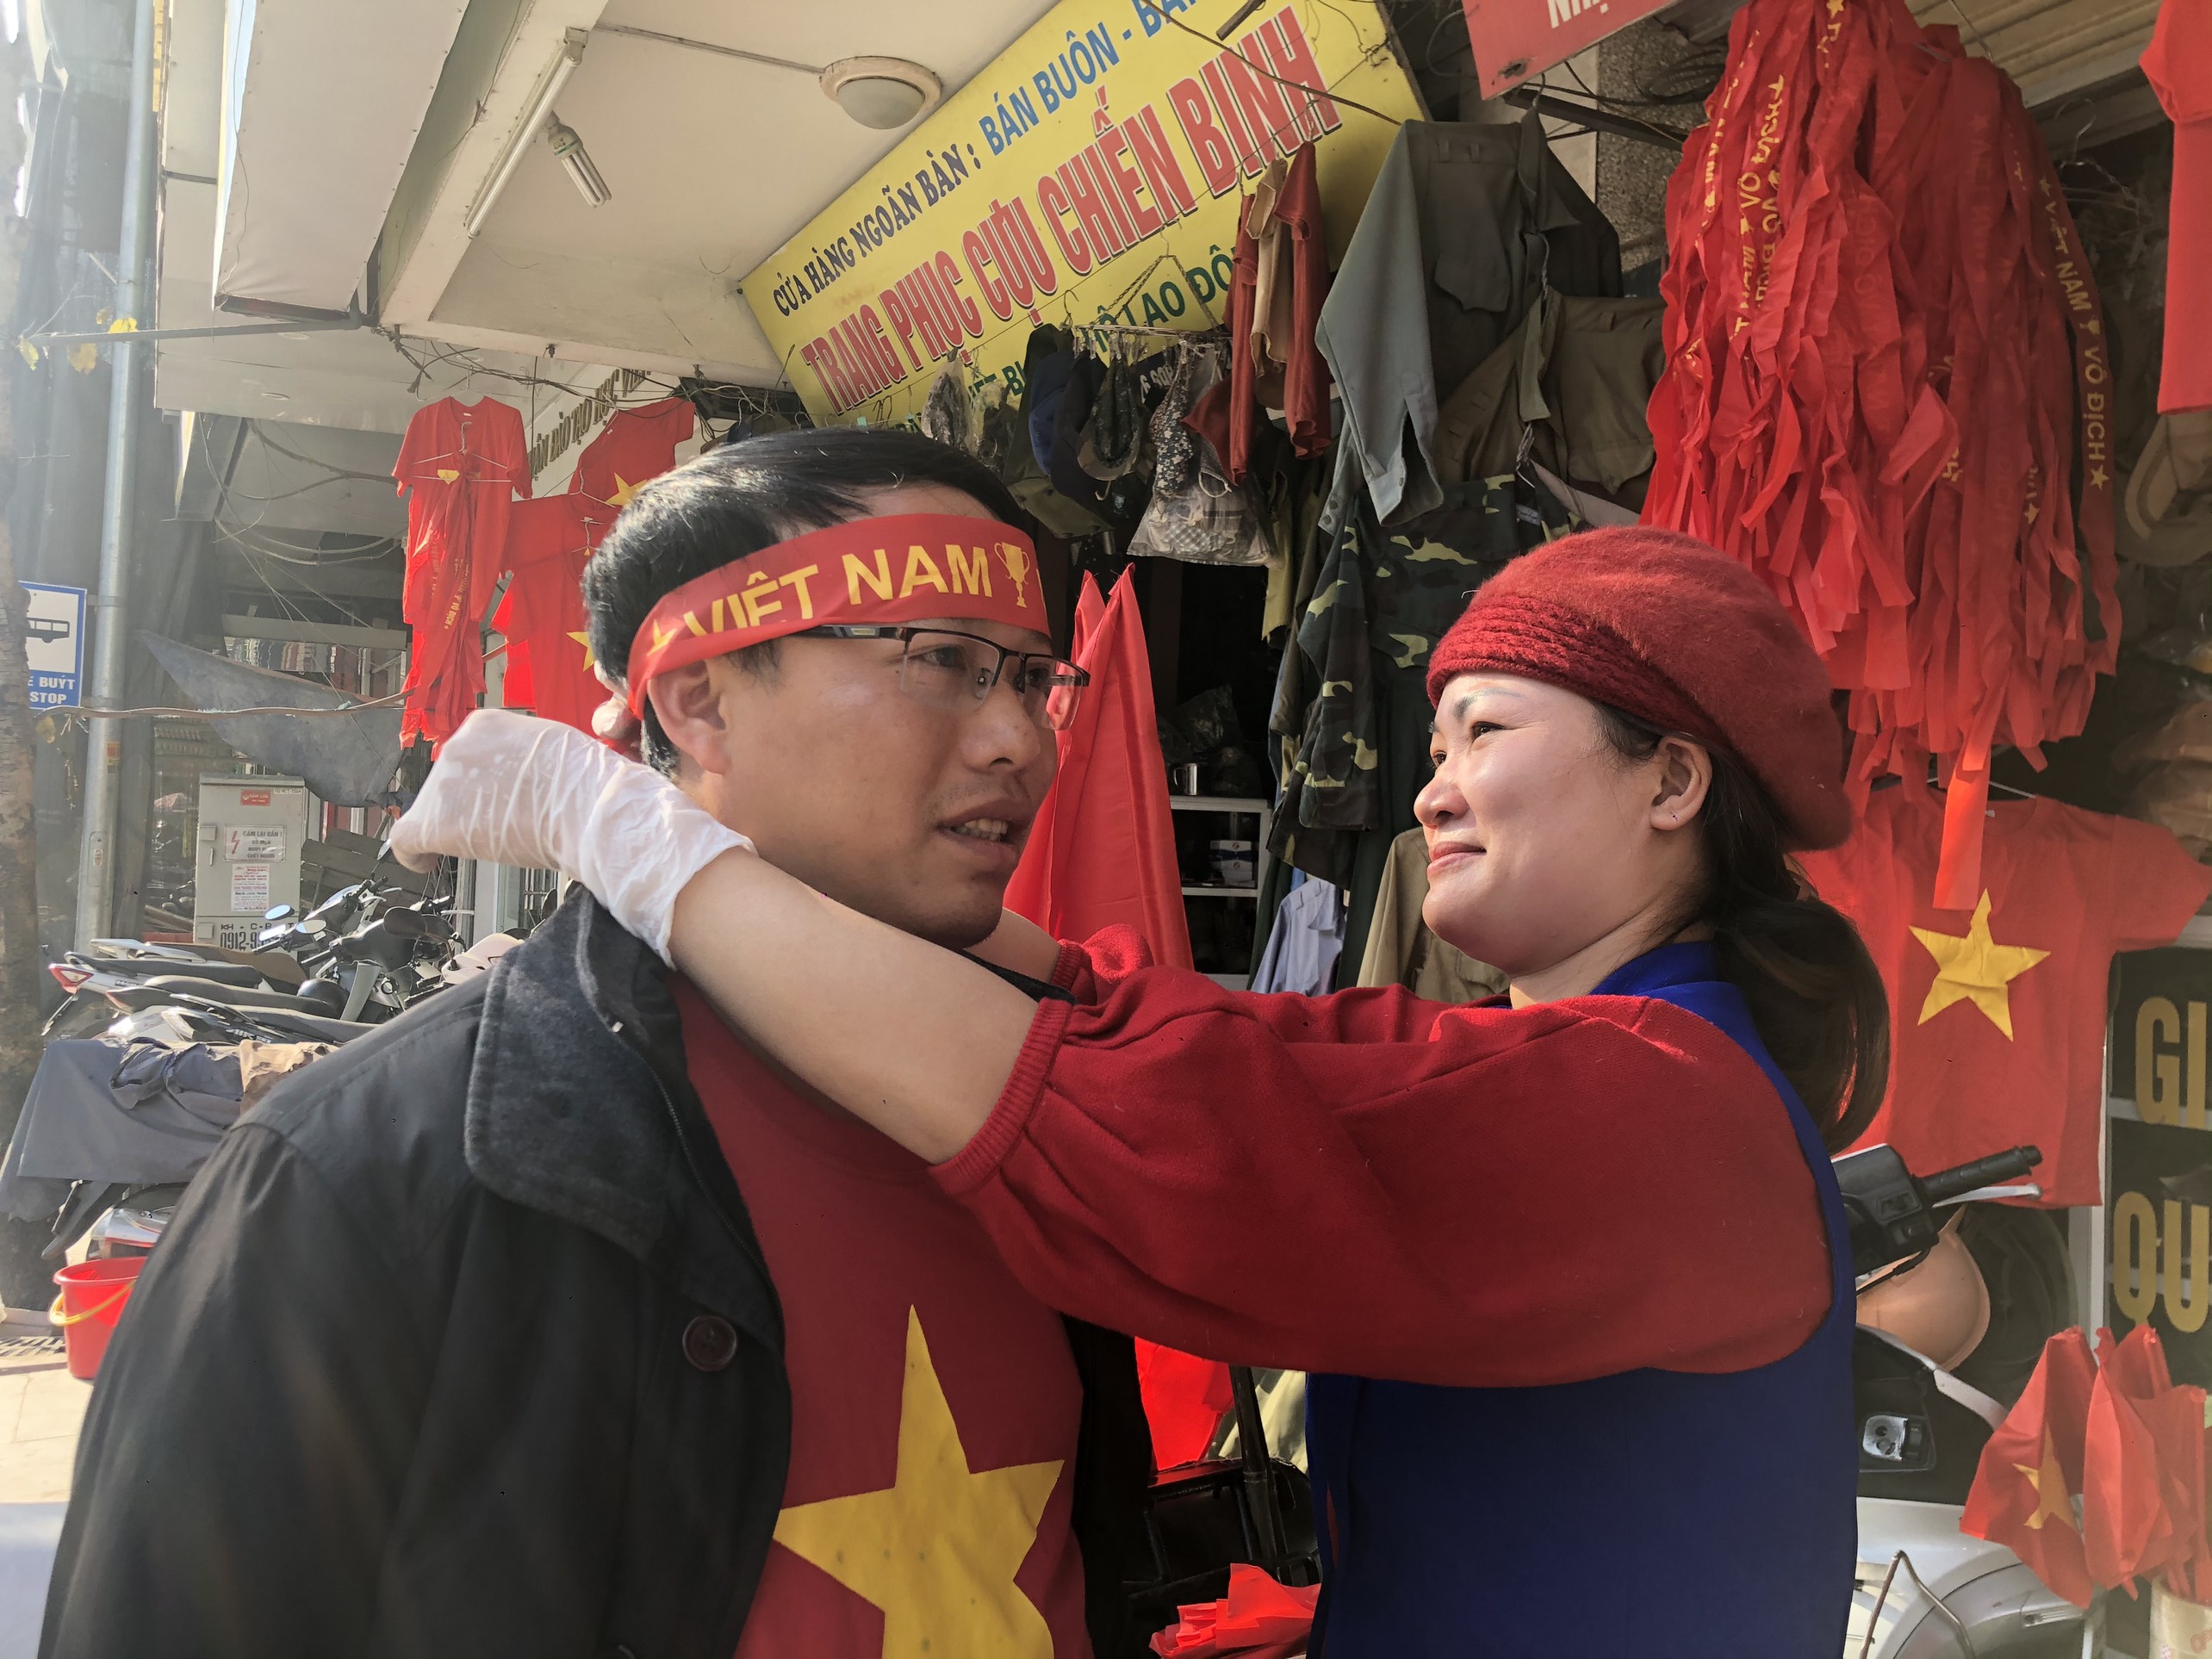 Ngay từ buổi chiều, nhiều cổ động viên đã mua băng rôn, cờ để chuẩn bị cổ vũ cho đội tuyển U22 Việt Nam đá trận chung kết.